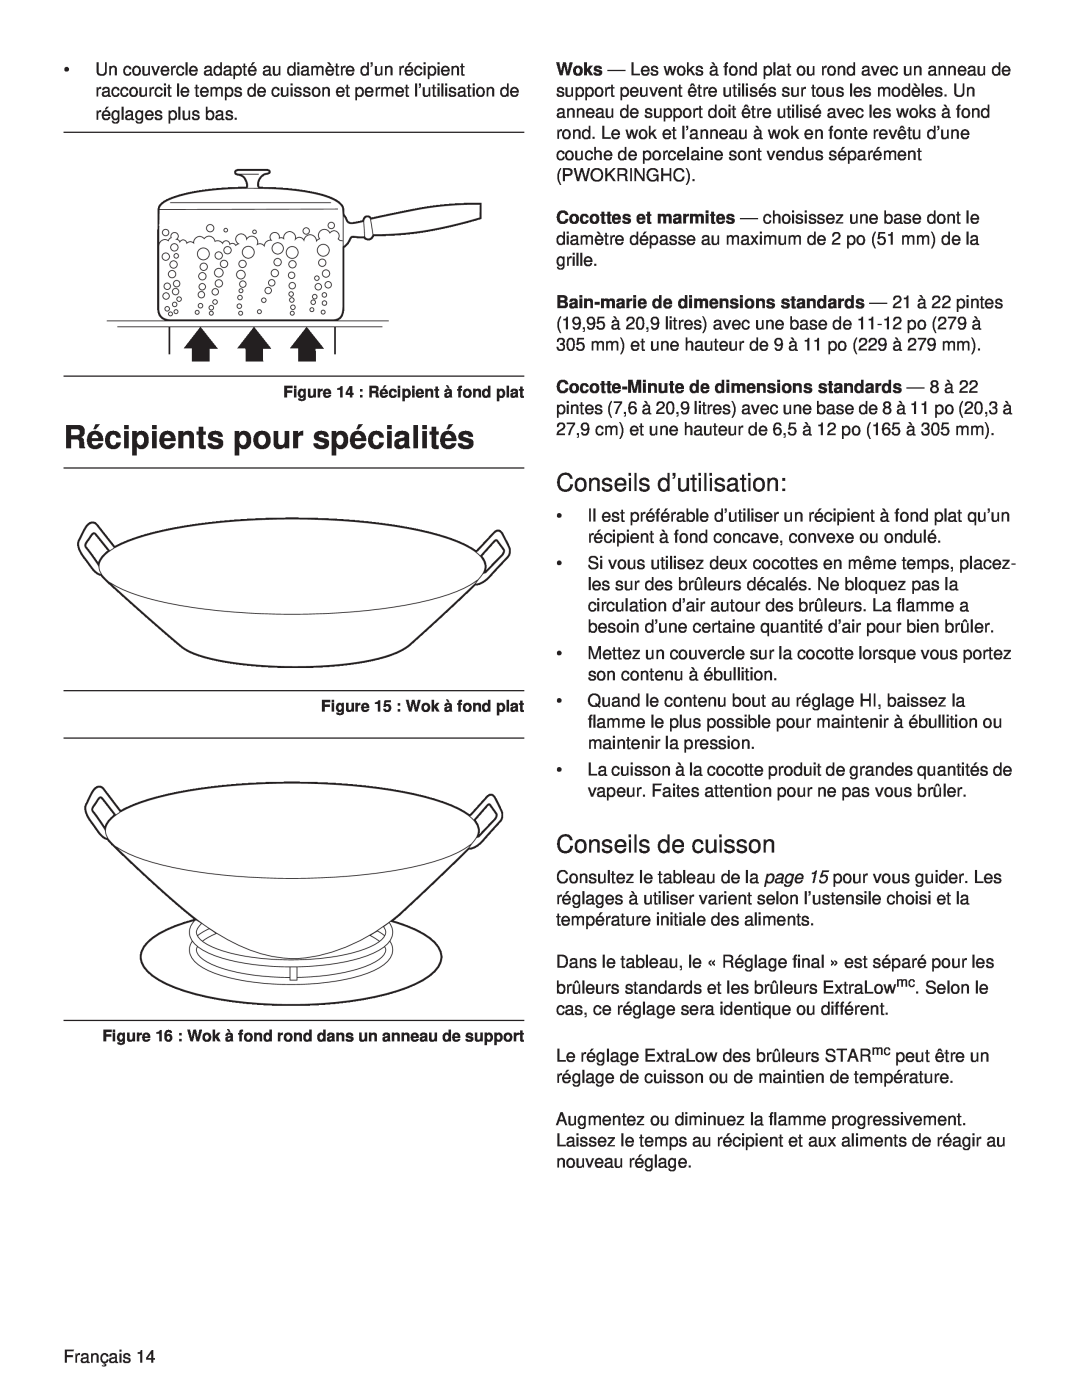 Thermador PCG48, PCG36, PCG30 manual Récipients pour spécialités, Conseils d’utilisation, Conseils de cuisson 